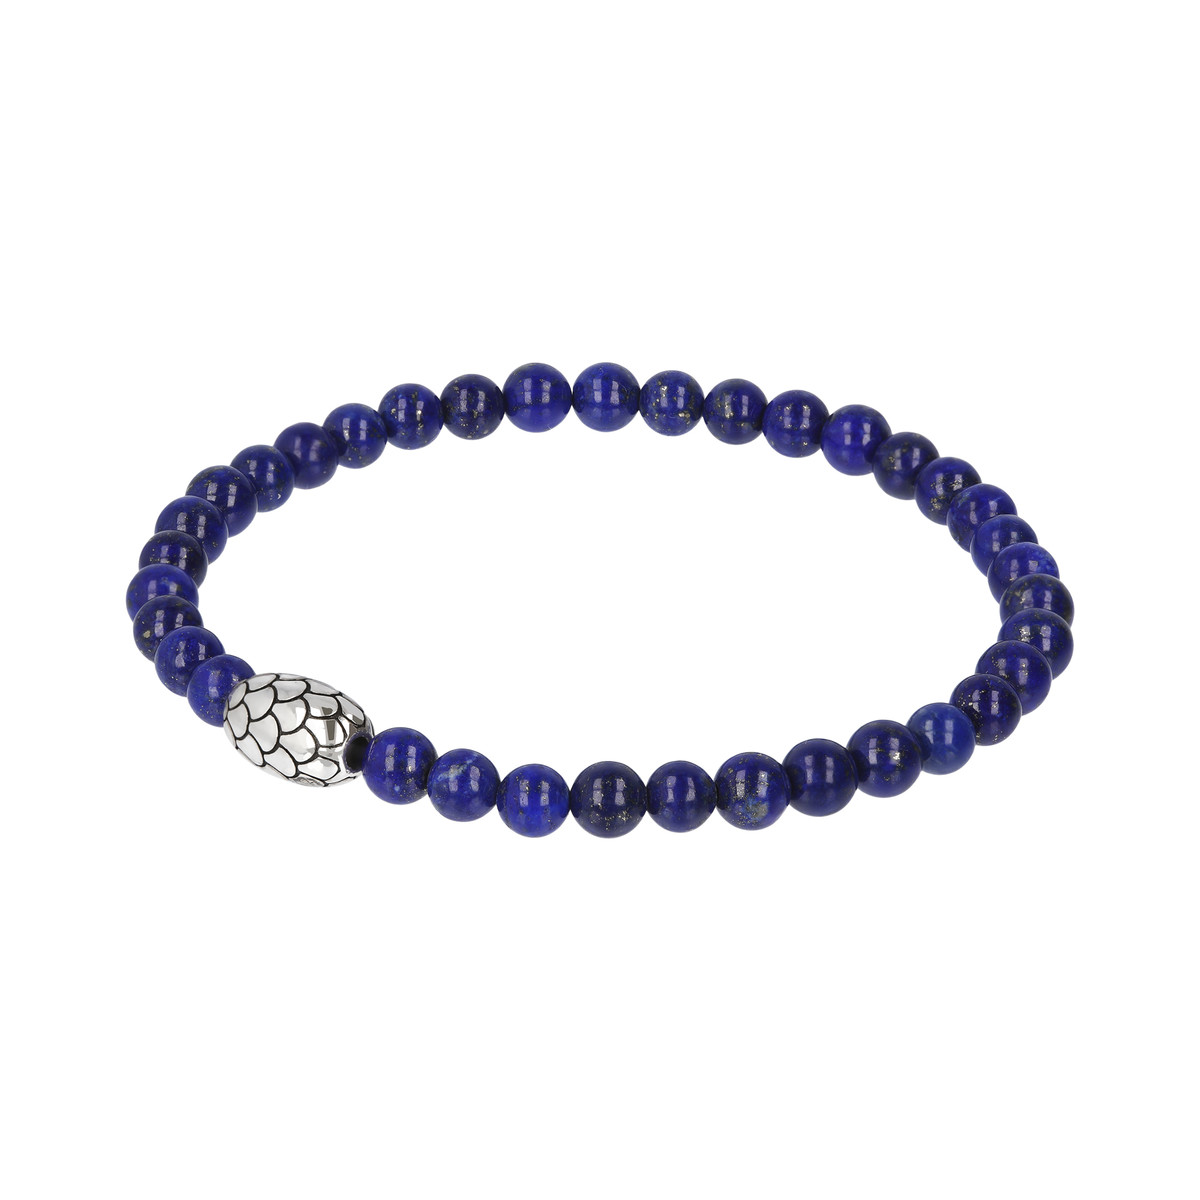 Bracelet perles lapis lazuli et perles argent écailles 19cm - vue 2